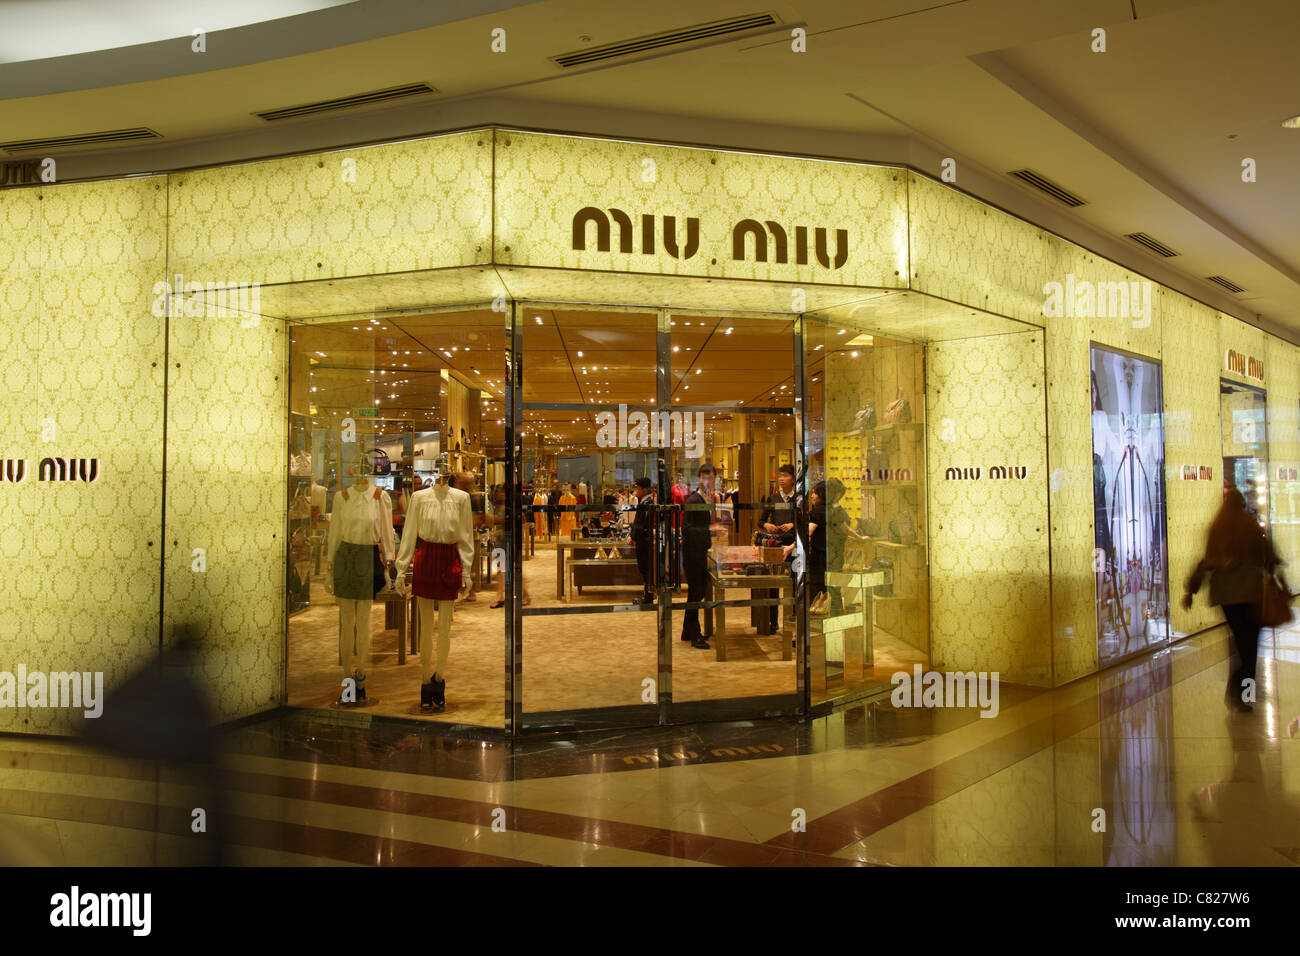 Miu miu shop at Suria KLCC shopping center, Kuala Lumpur, Malaysia Stock Photo